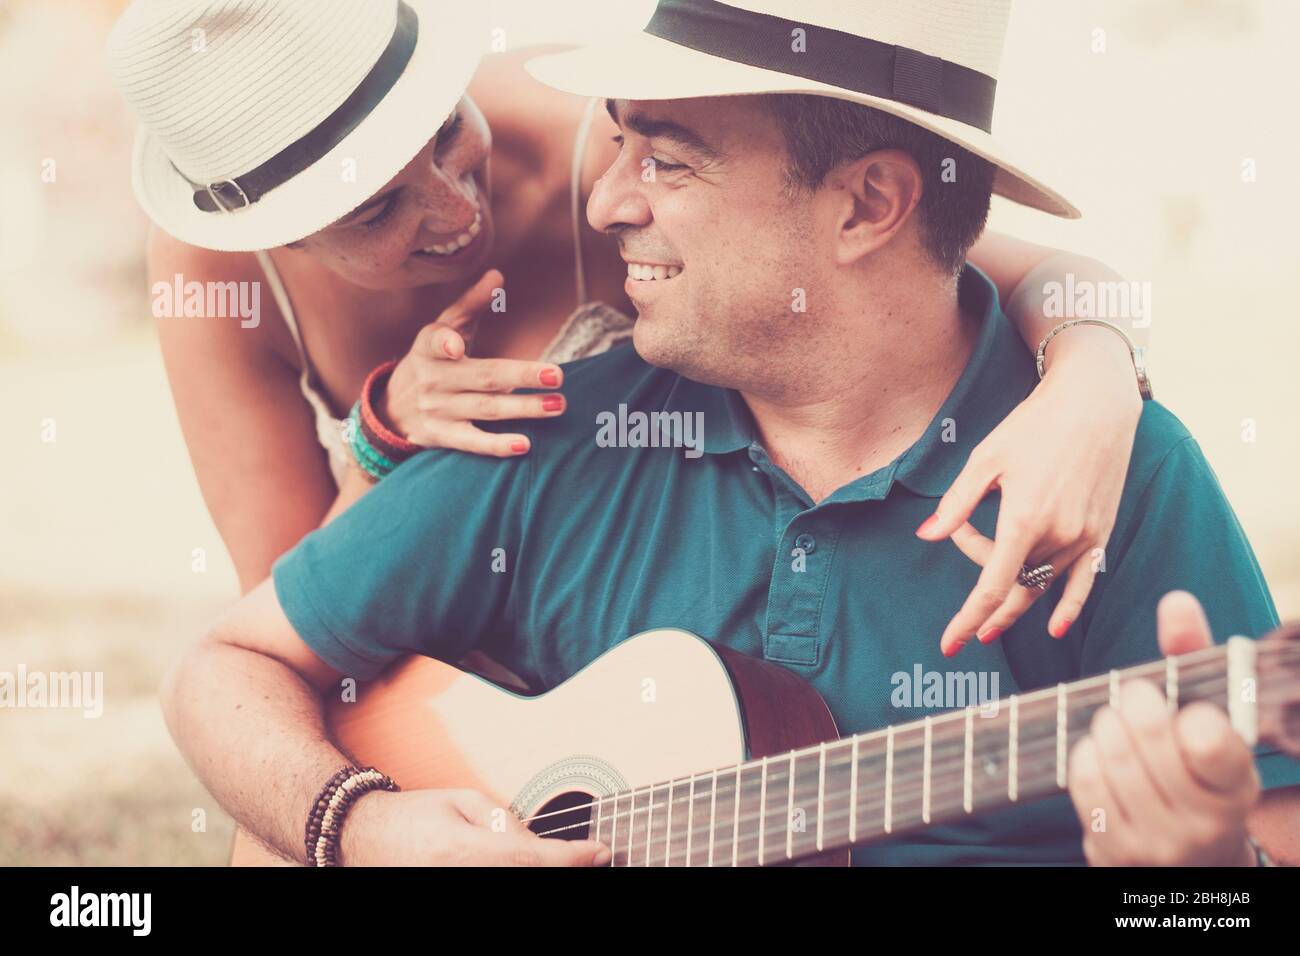 Romantische Umarmung ein Farben mit fröhlichen glücklich mittleren Alters Menschen in der Liebe spielen eine Gitarre zusammen suchen und lächeln - Beziehung für mittleren Alters Erwachsene kaukasischen Paar - vintage Filtertöne Stockfoto